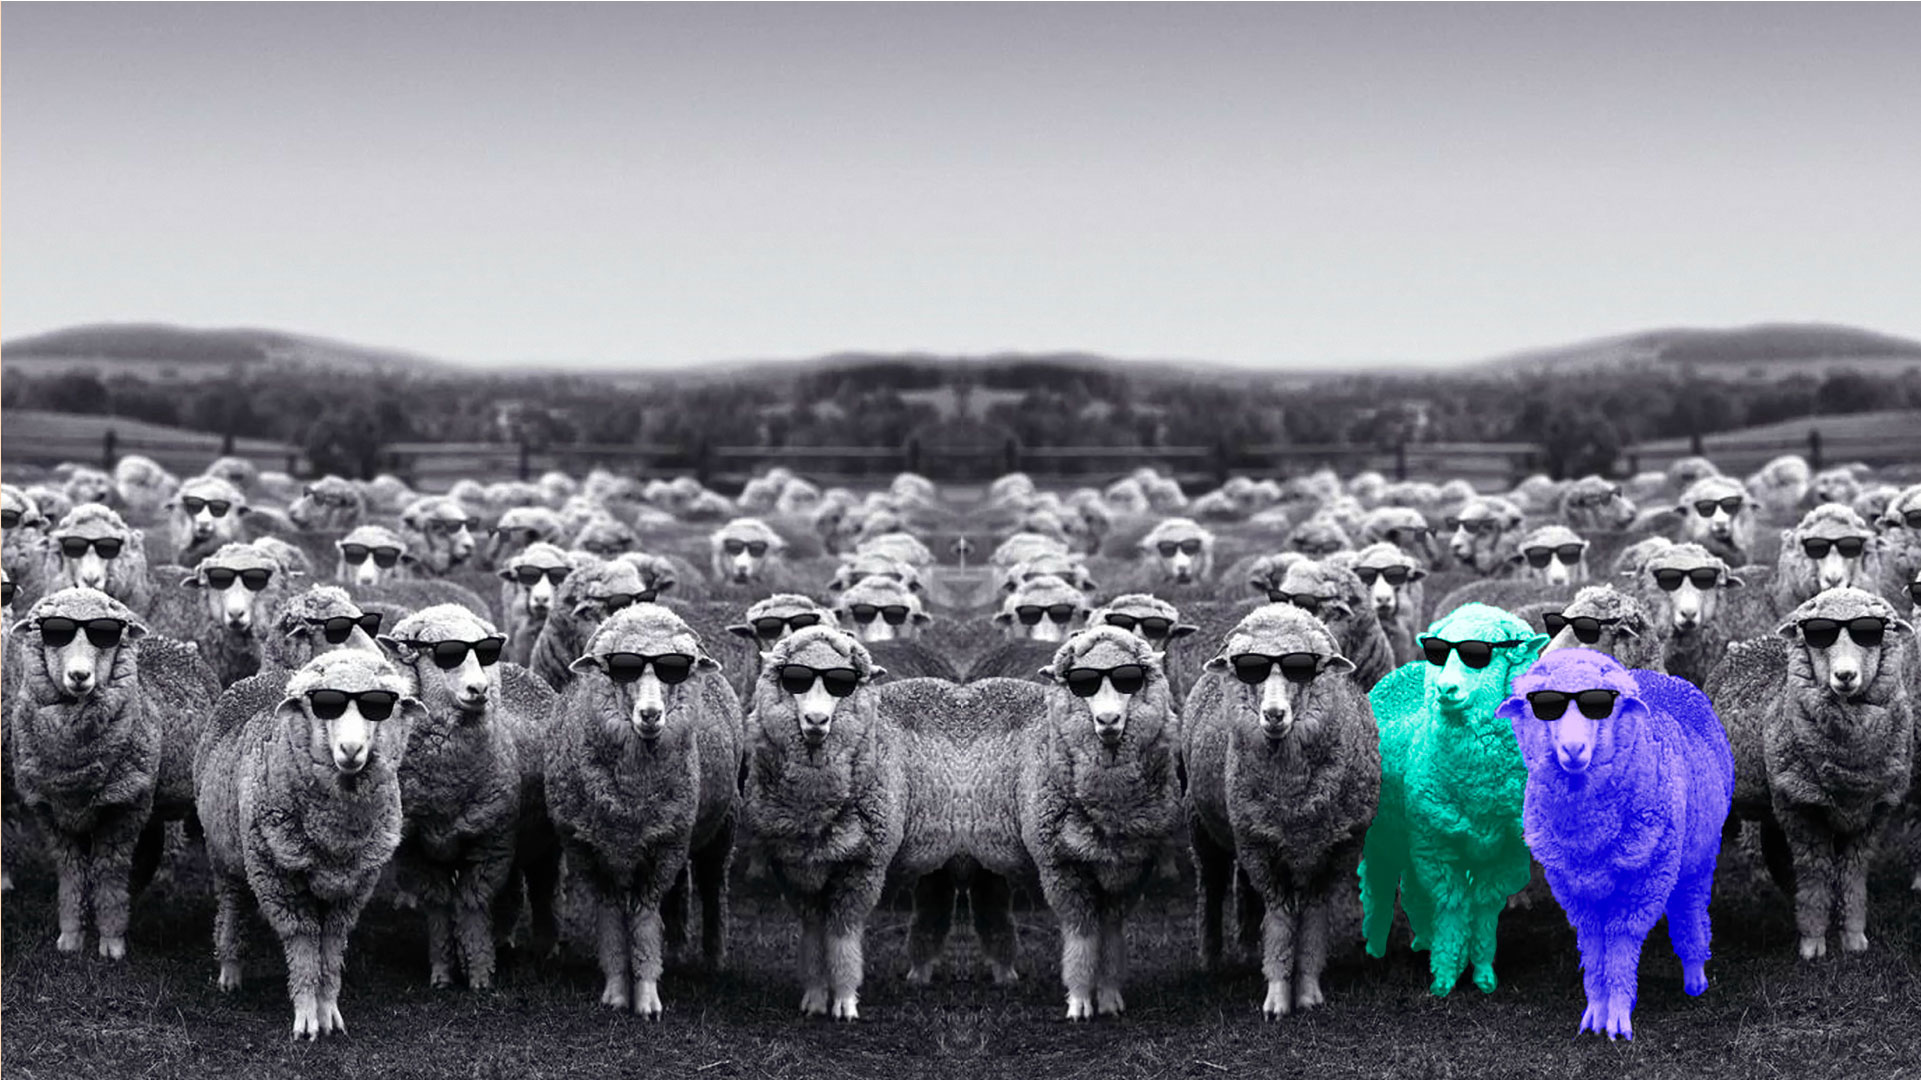 Edgee agence événementielle évènements Paris -visuel-home-moutons-lunette-fluo Edgee-Accueil des événements Supersolidaroécoloptimistic'